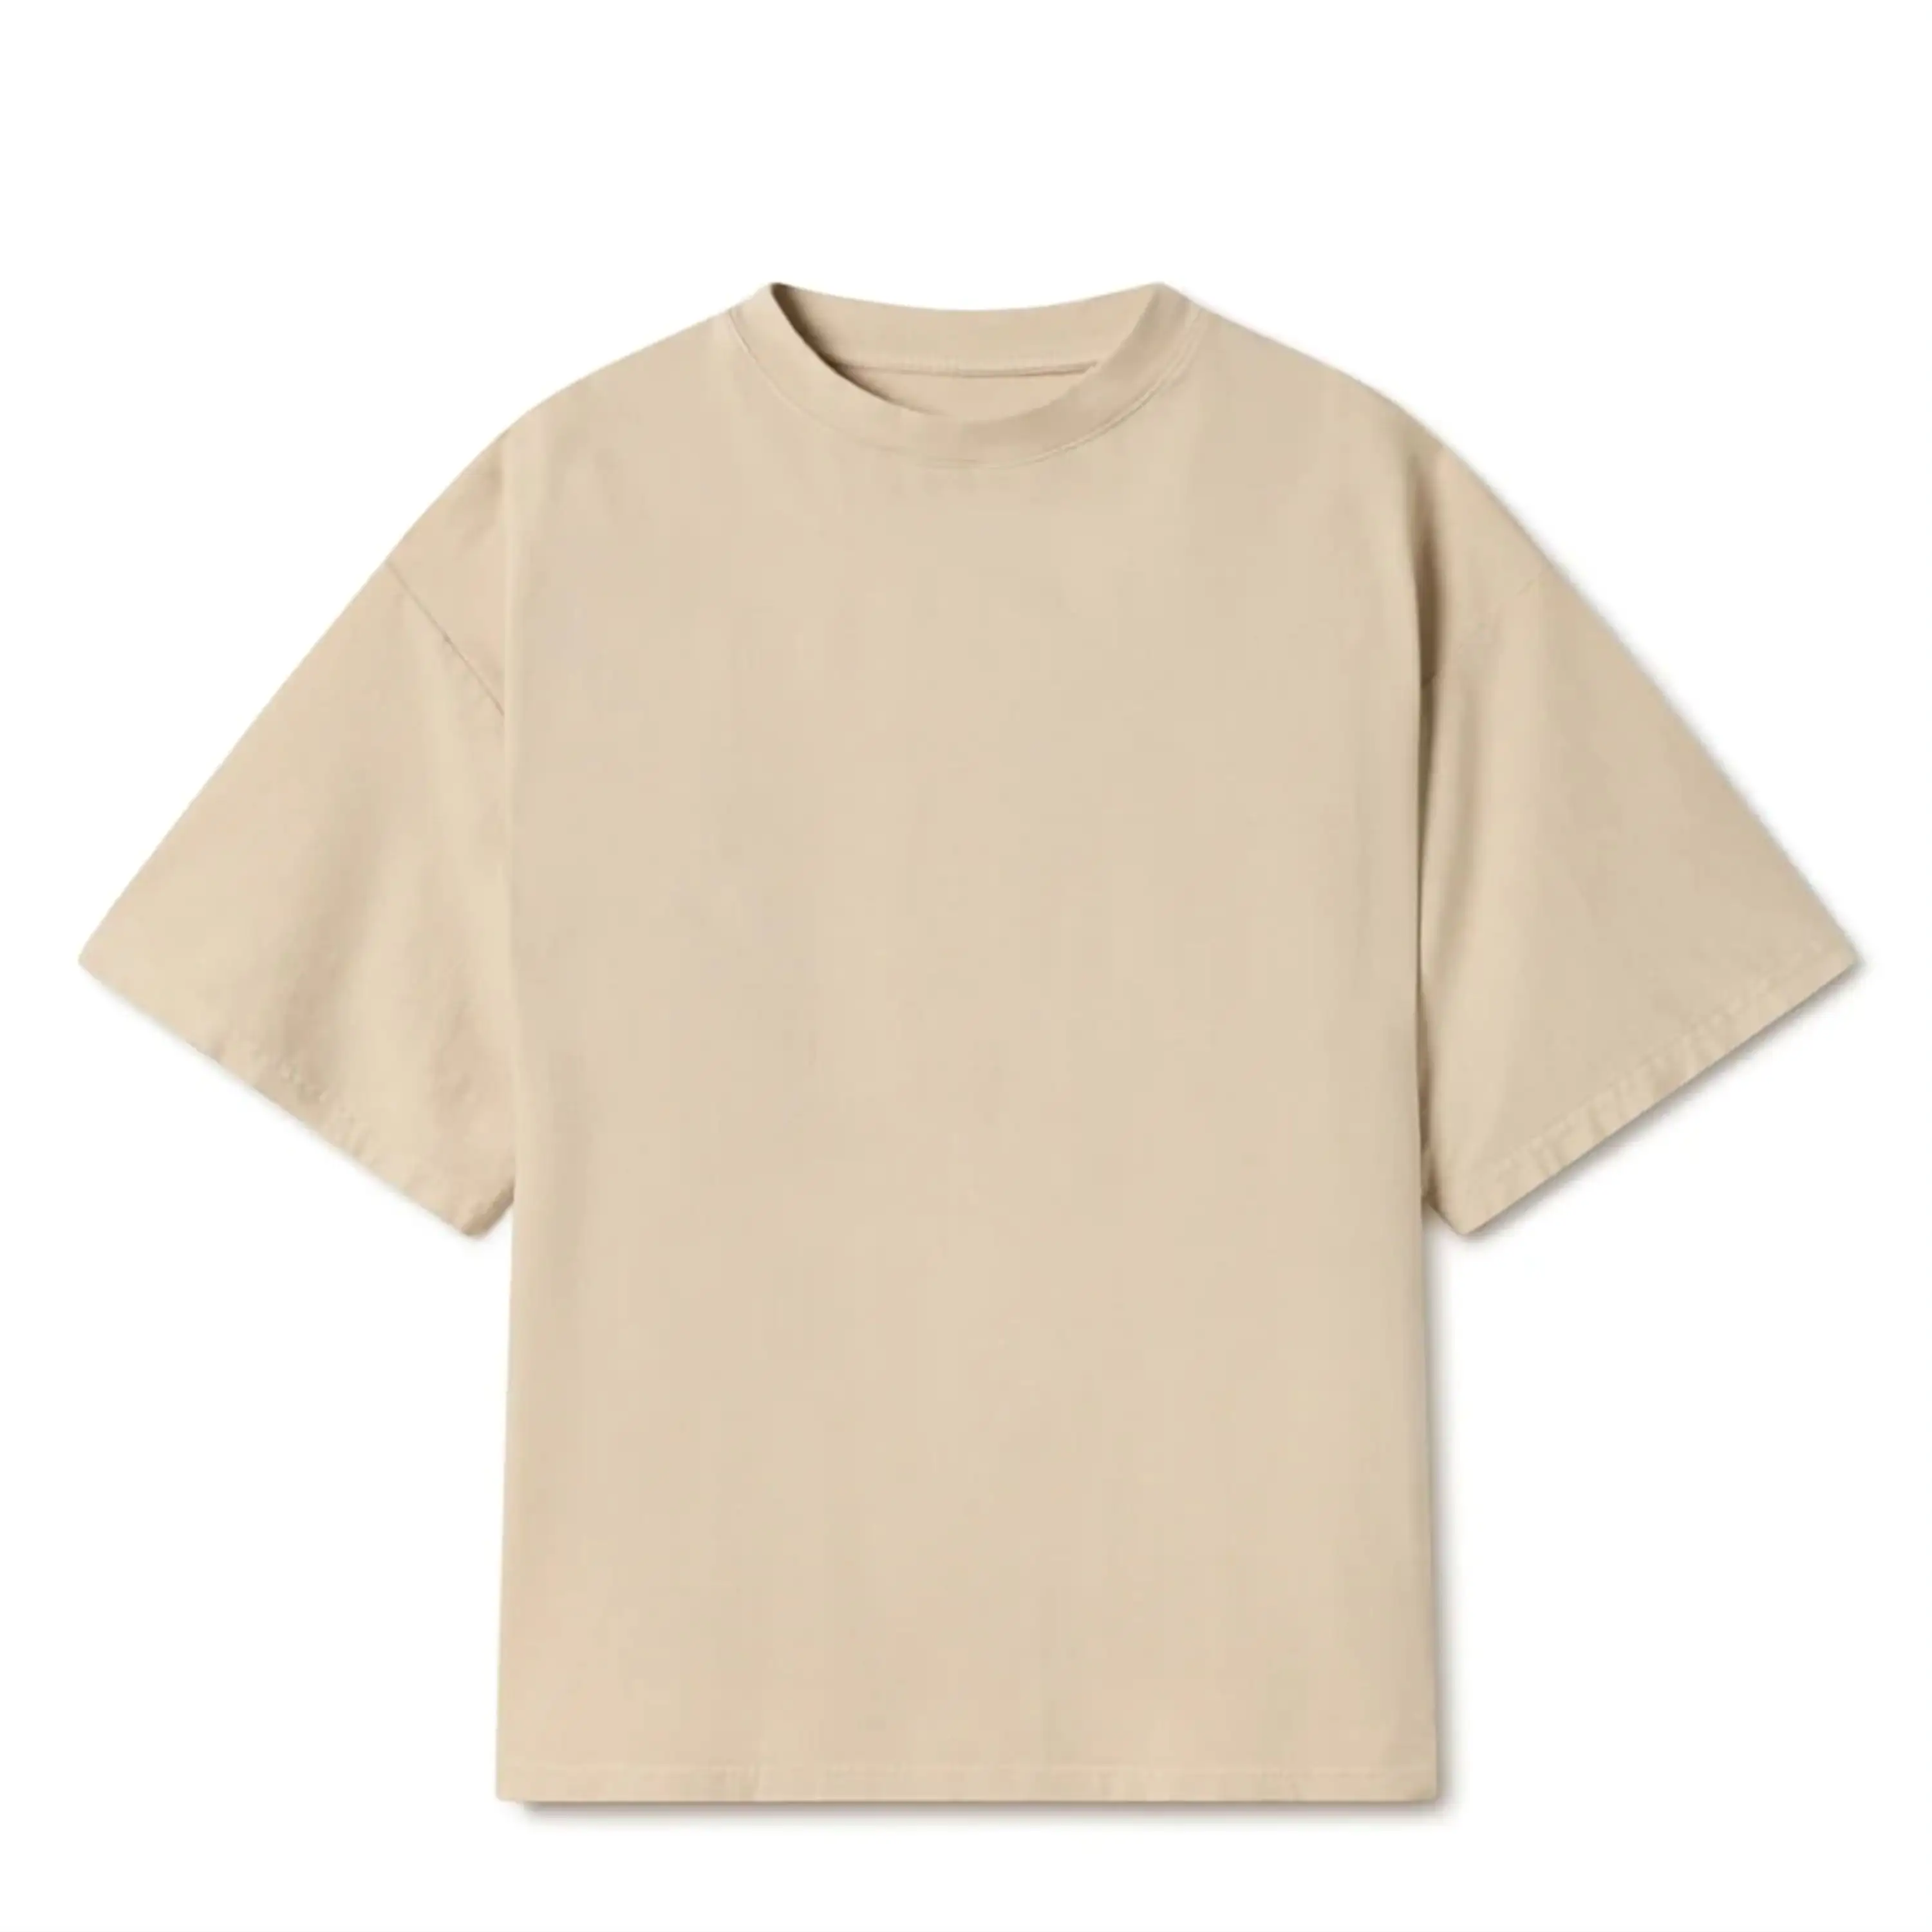 カスタムロゴTシャツTシャツ綿100% メンズTシャツ180 GSM厚手の綿通気性ユニセックスブランクTシャツ